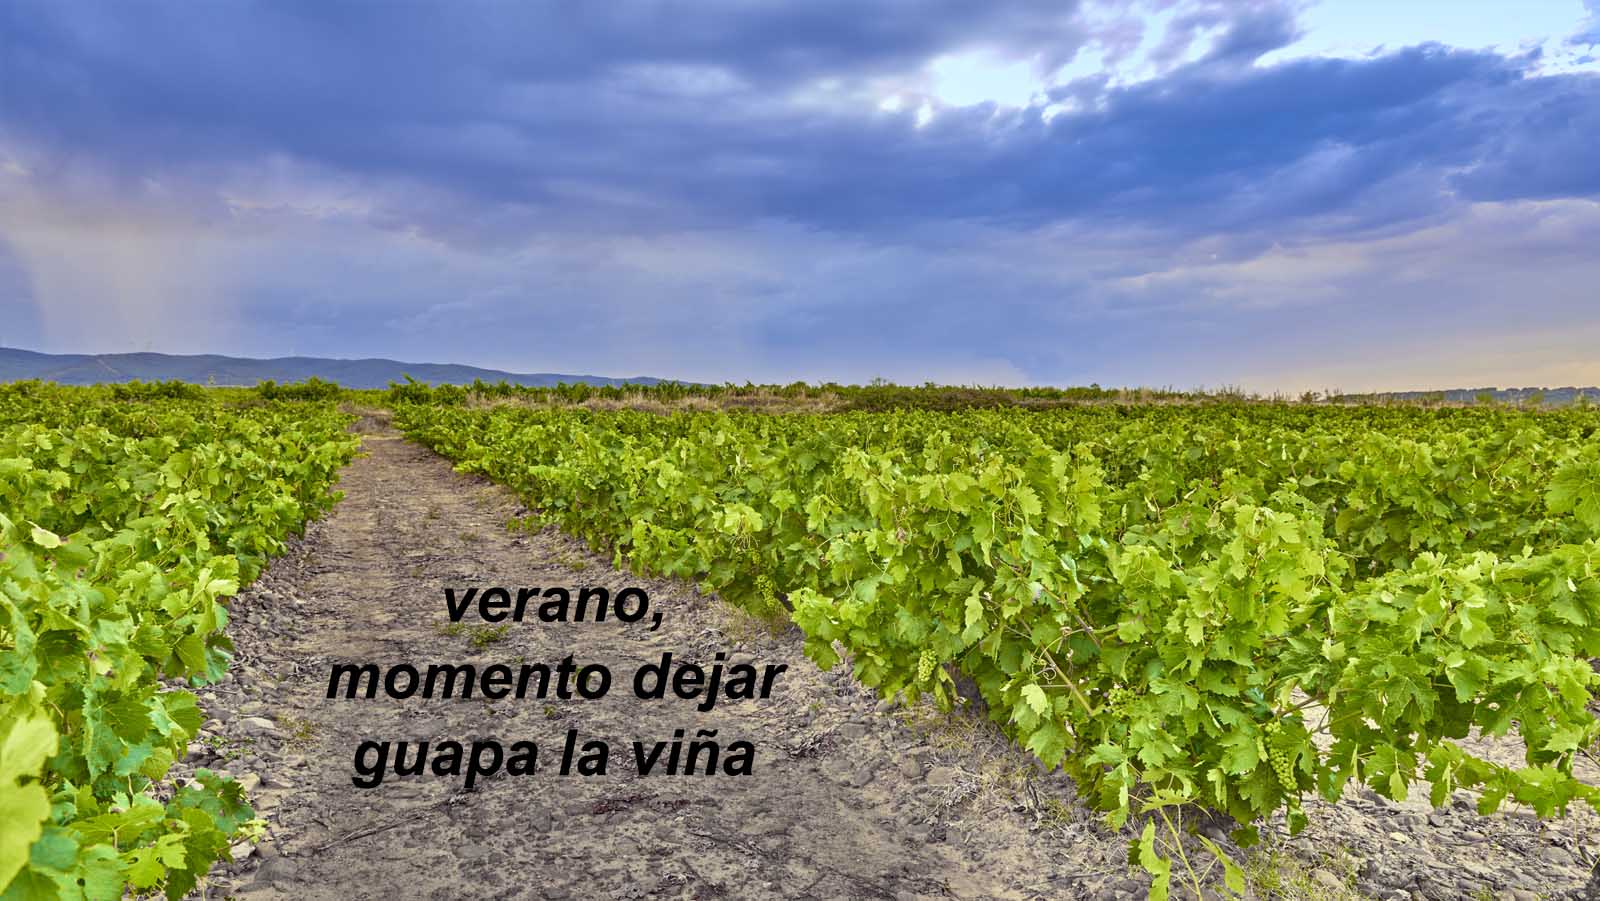 Diario viticultor – parte 5